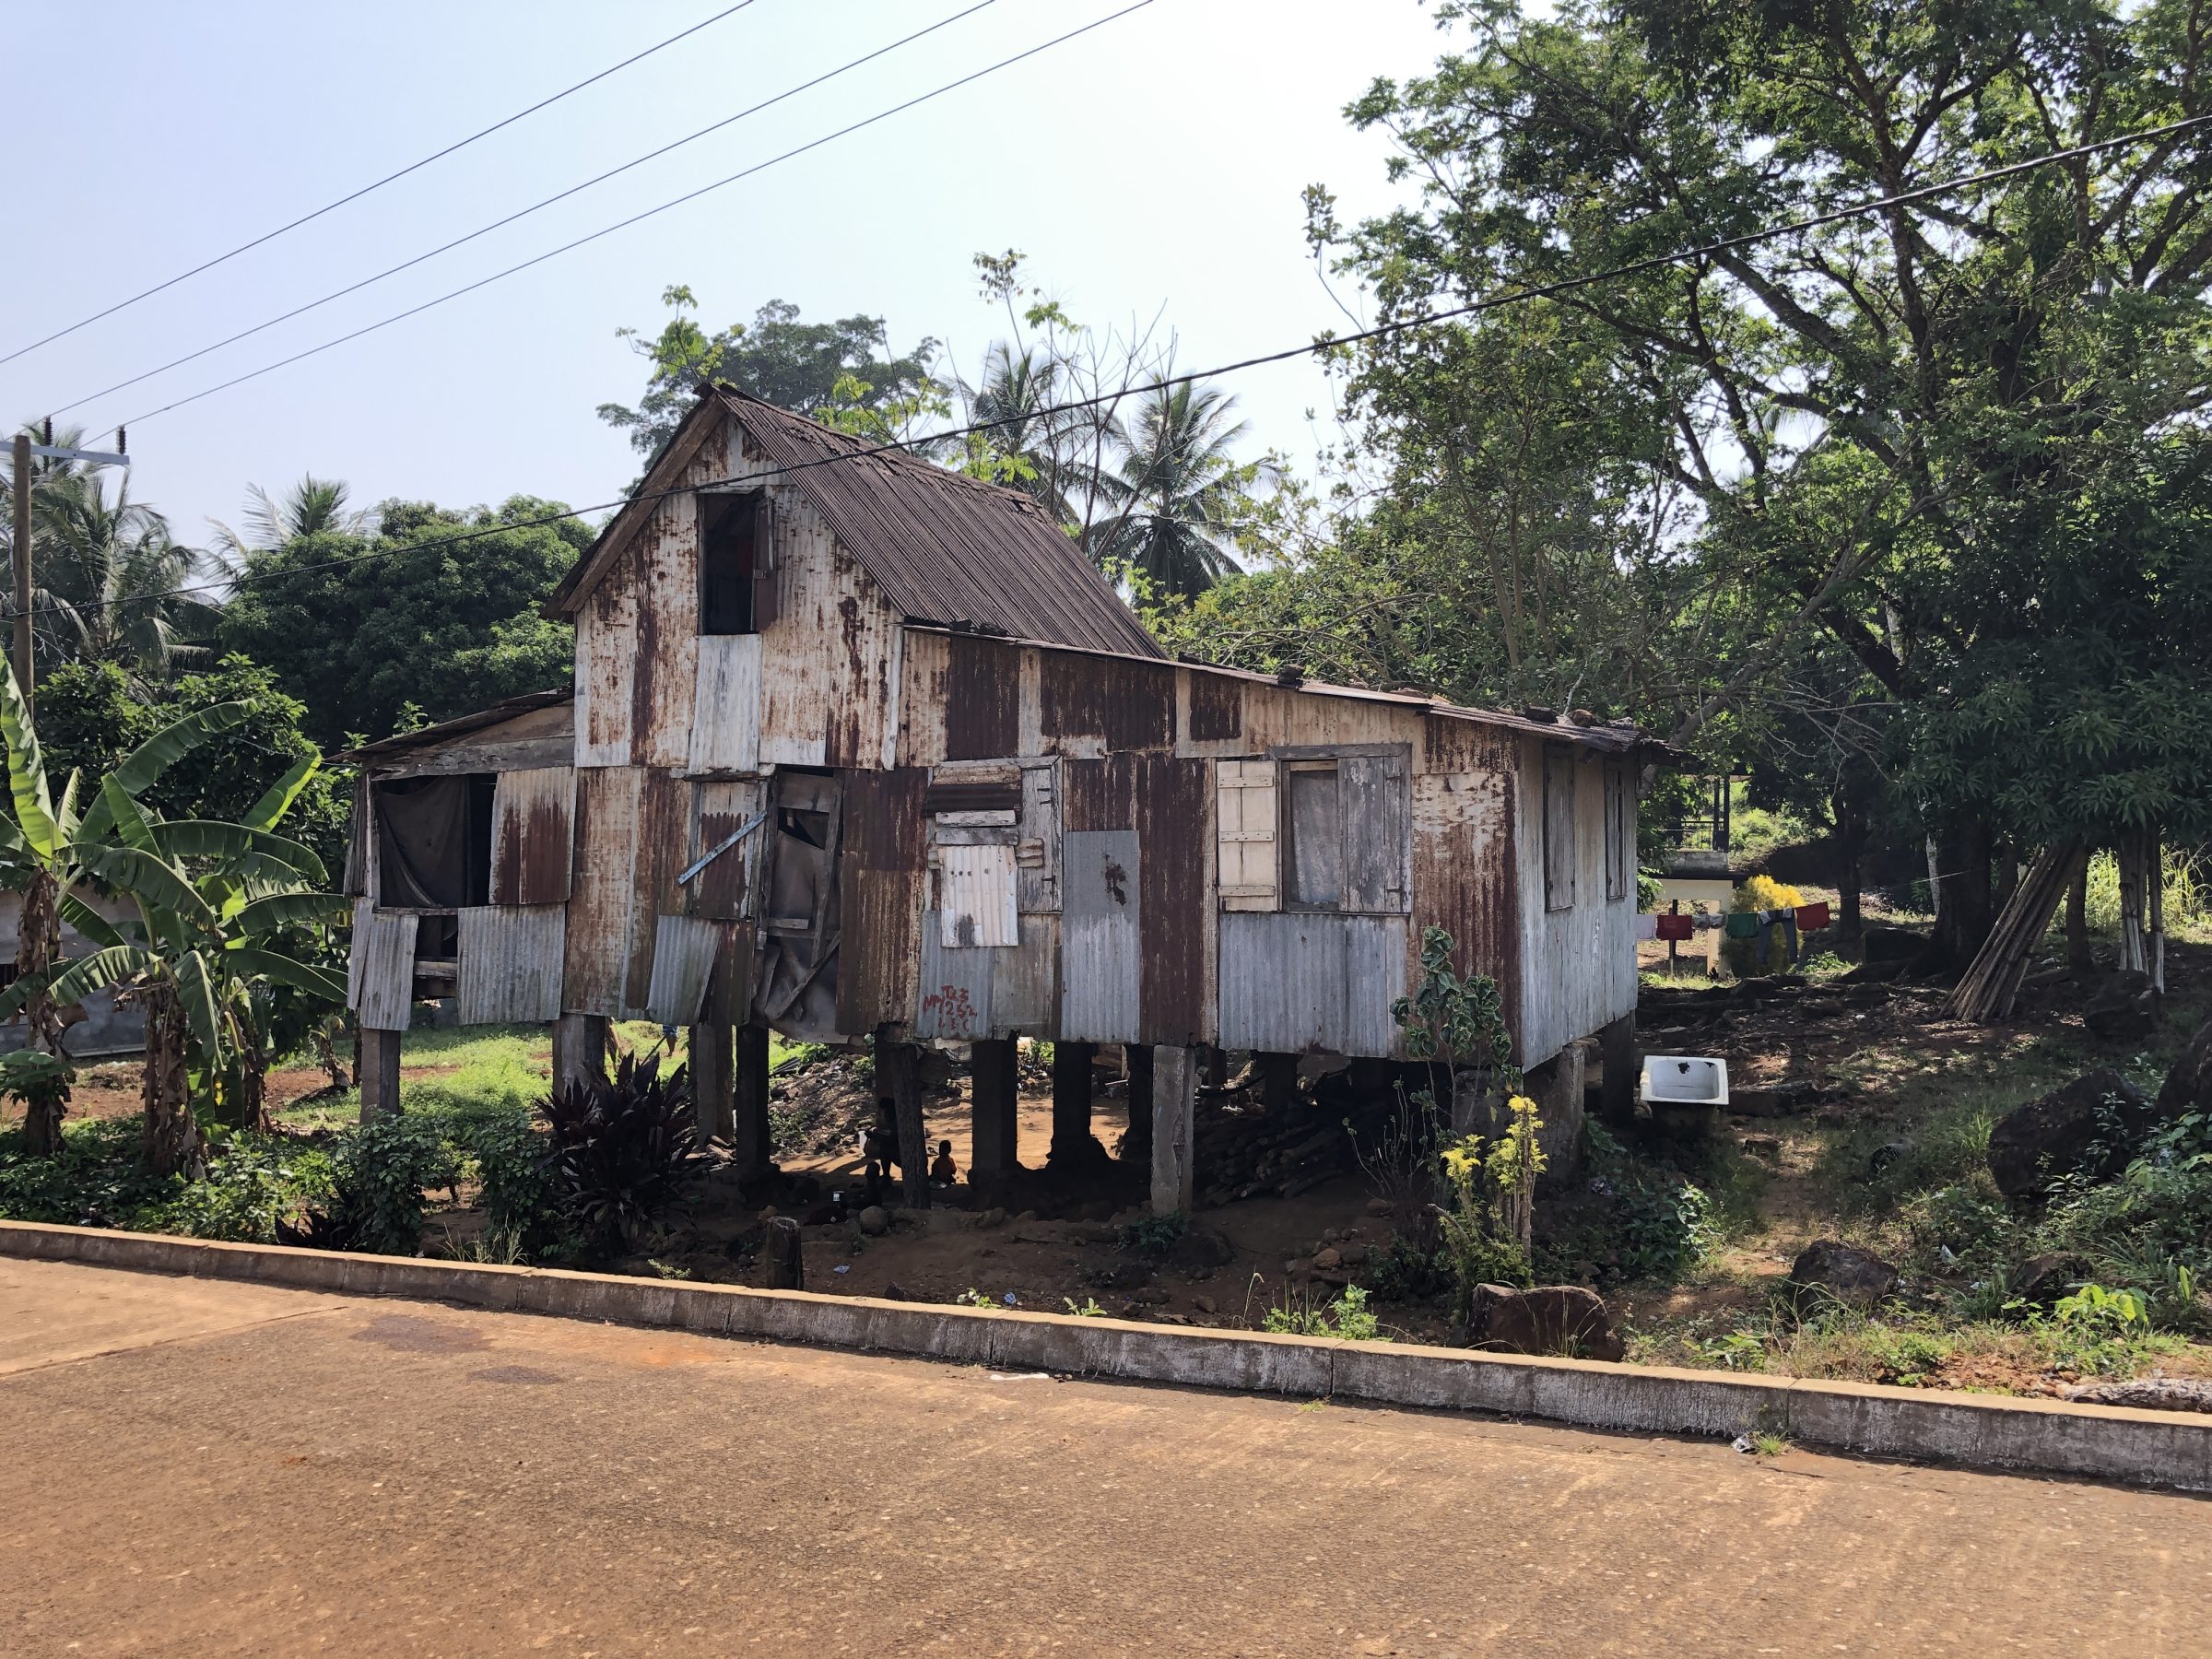 Huis op stelten | Overlanden in Liberia